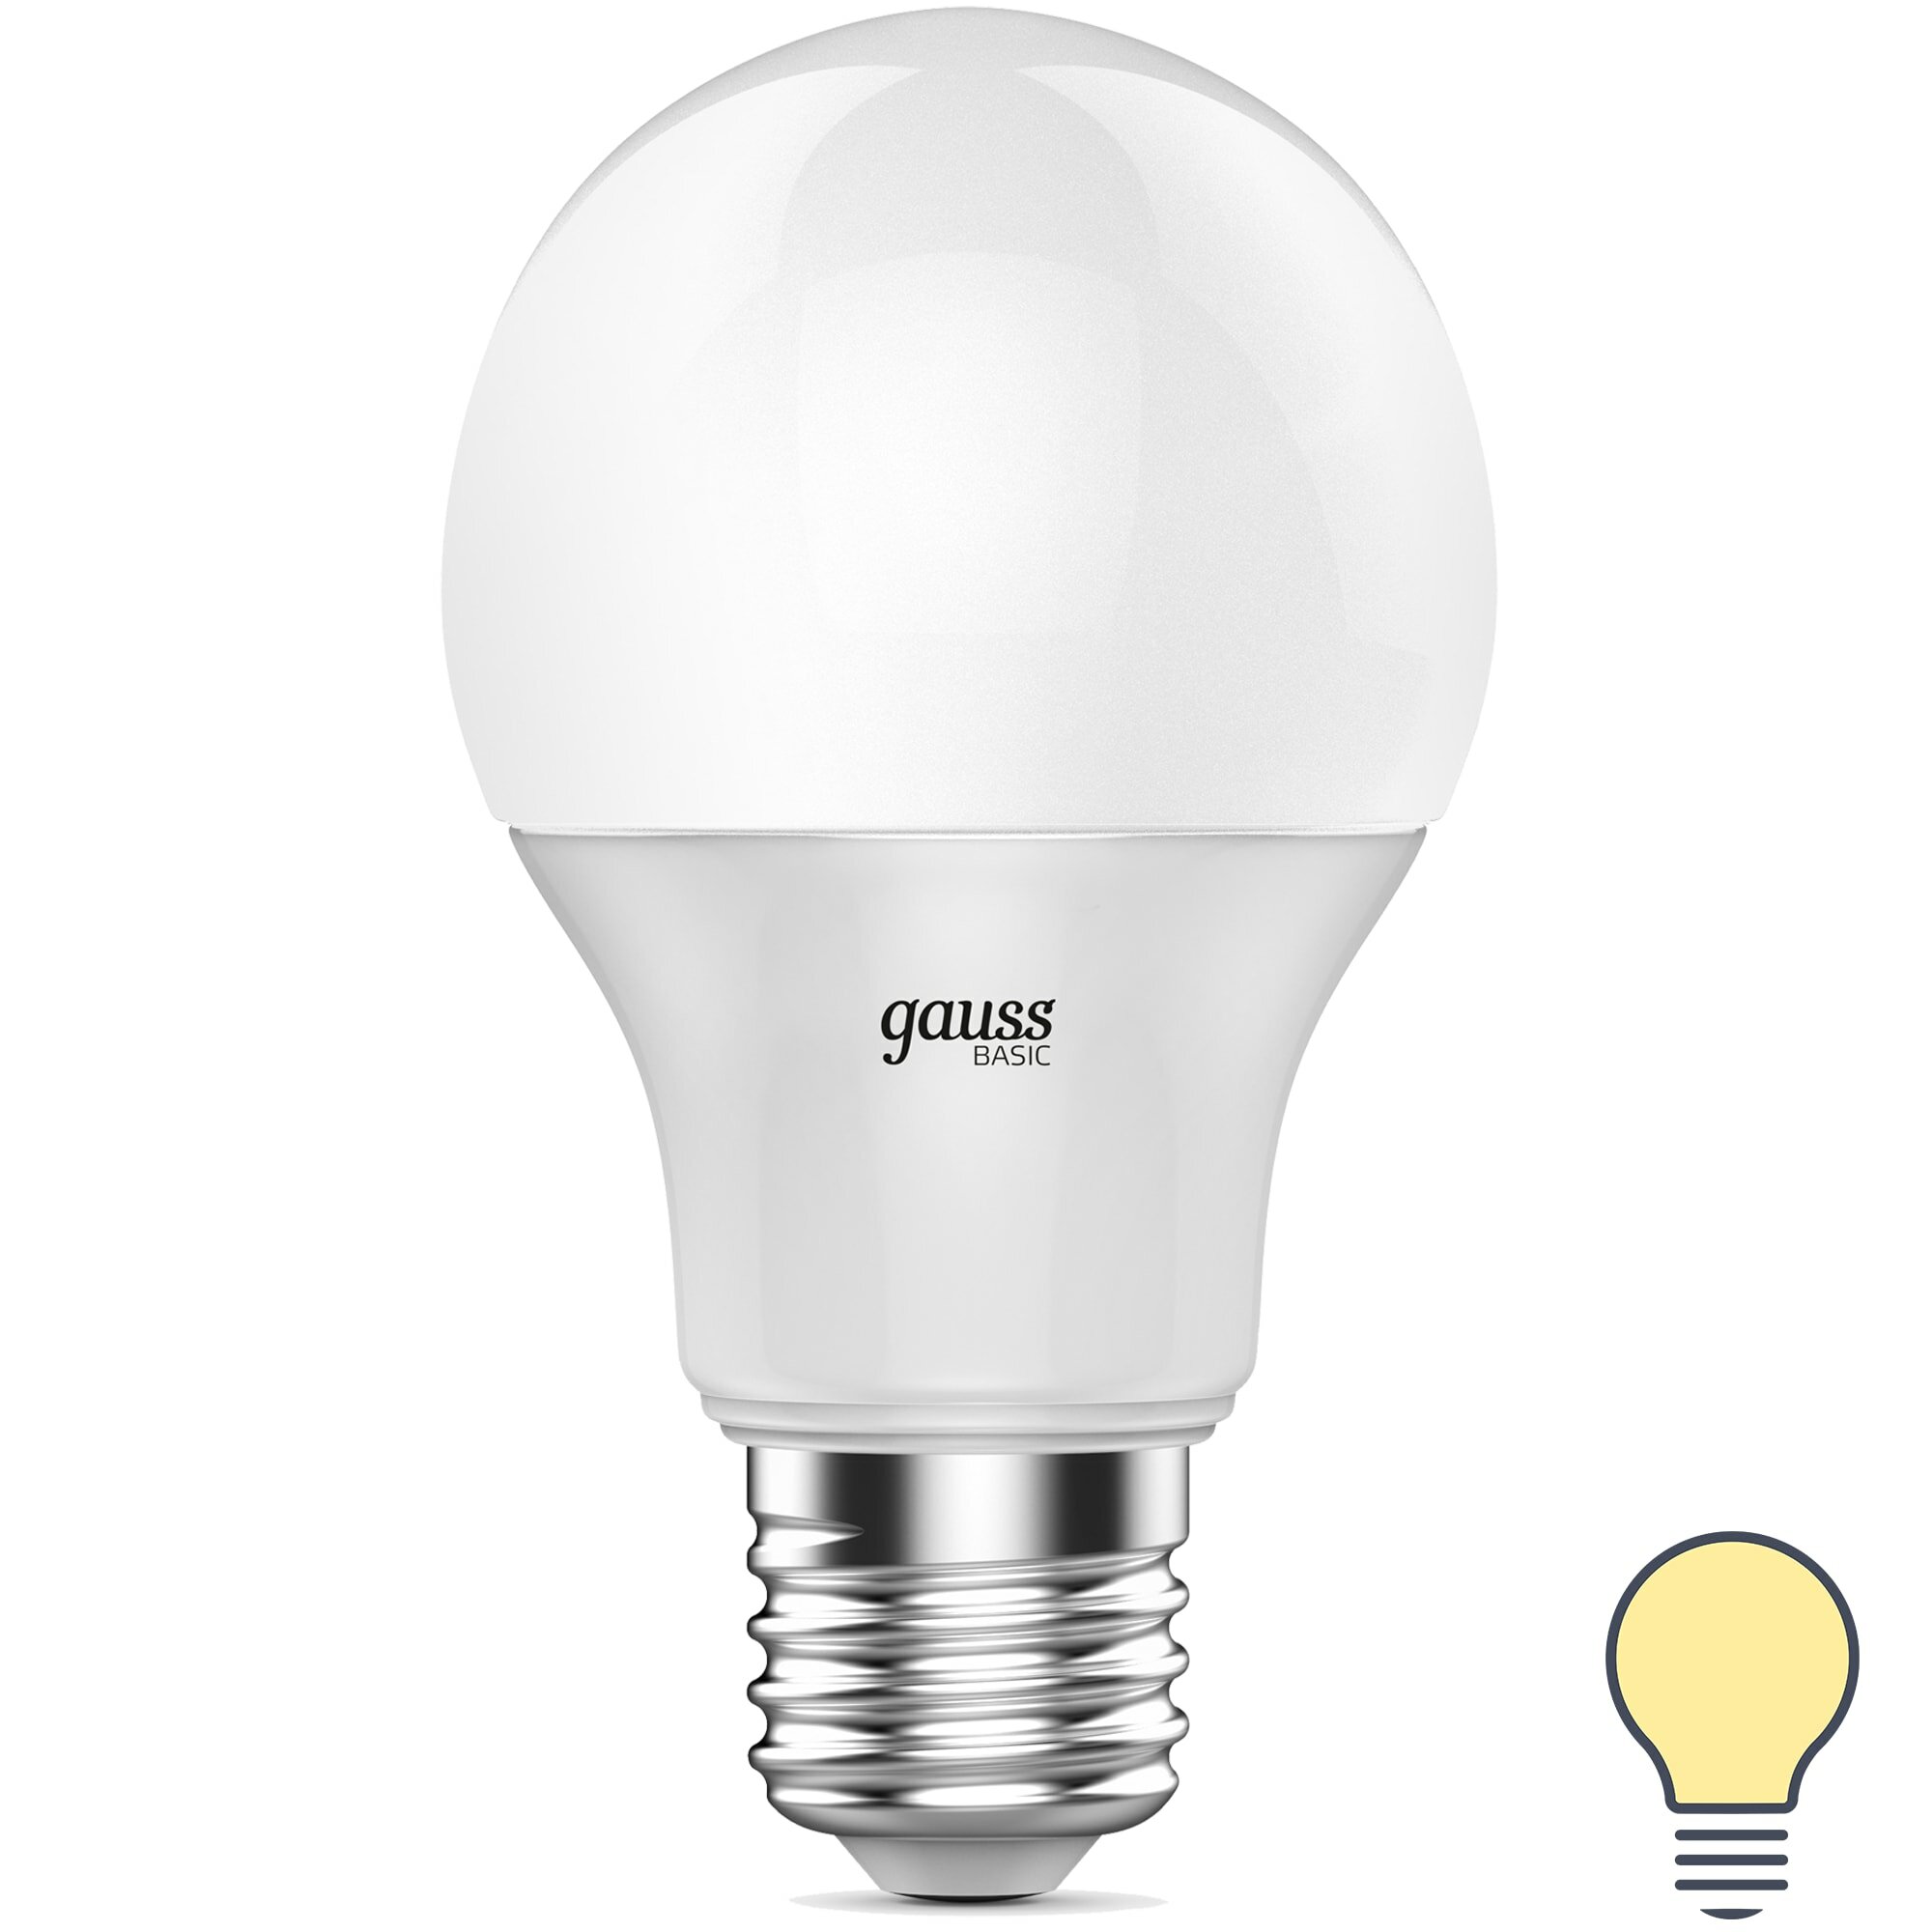 Лампа светодиодная Gauss E27 170-240 В 9.5 Вт груша матовая 750 лм теплый белый свет. Набор из 2 шт.